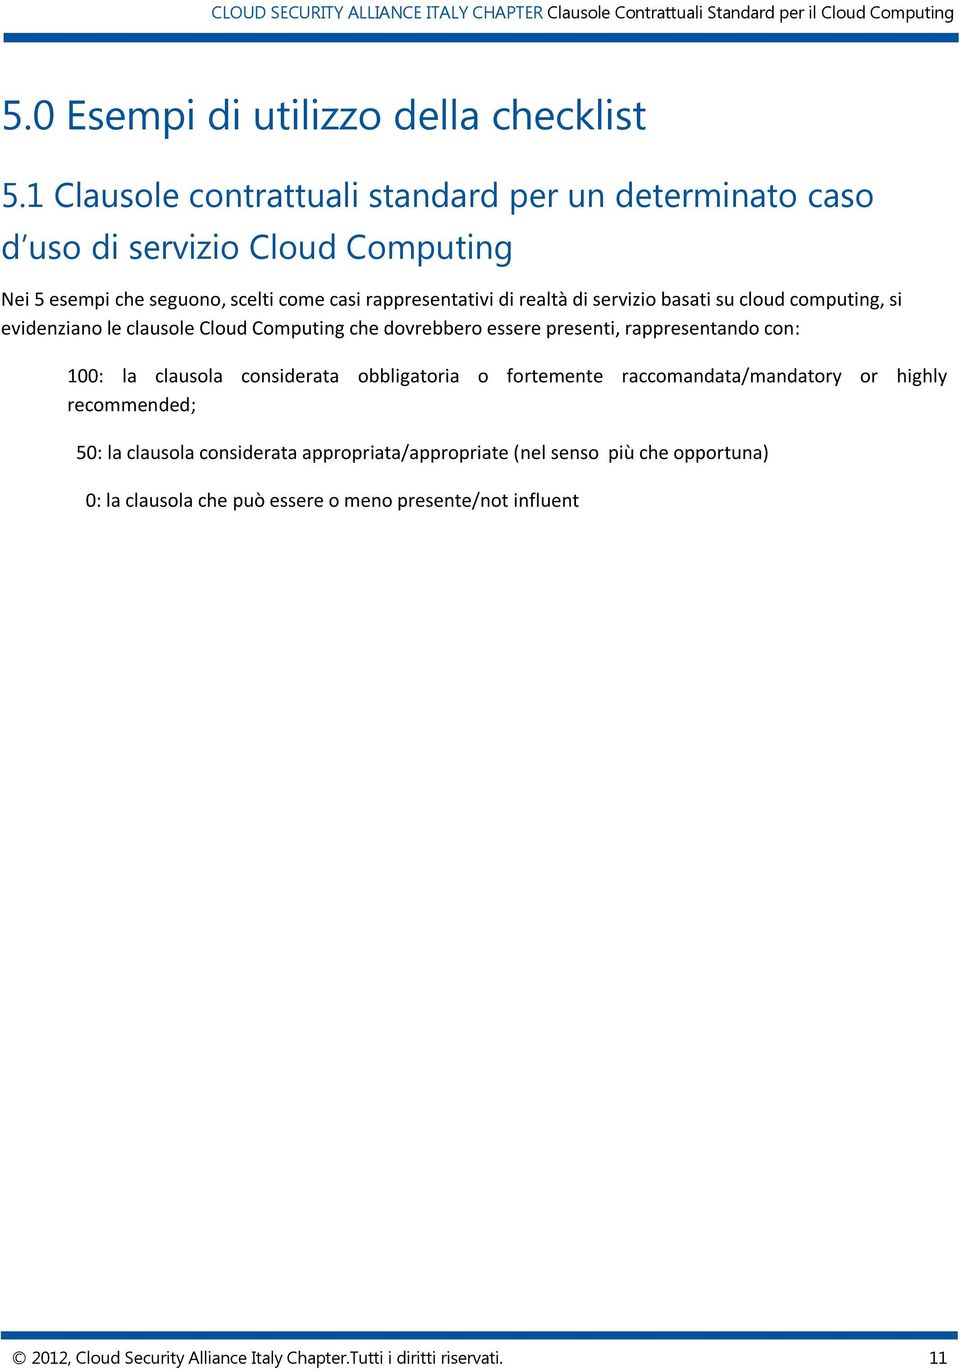 servizio basati su cloud computing, si evidenziano le clausole Cloud Computing che dovrebbero essere presenti, rappresentando con: 100: la clausola considerata